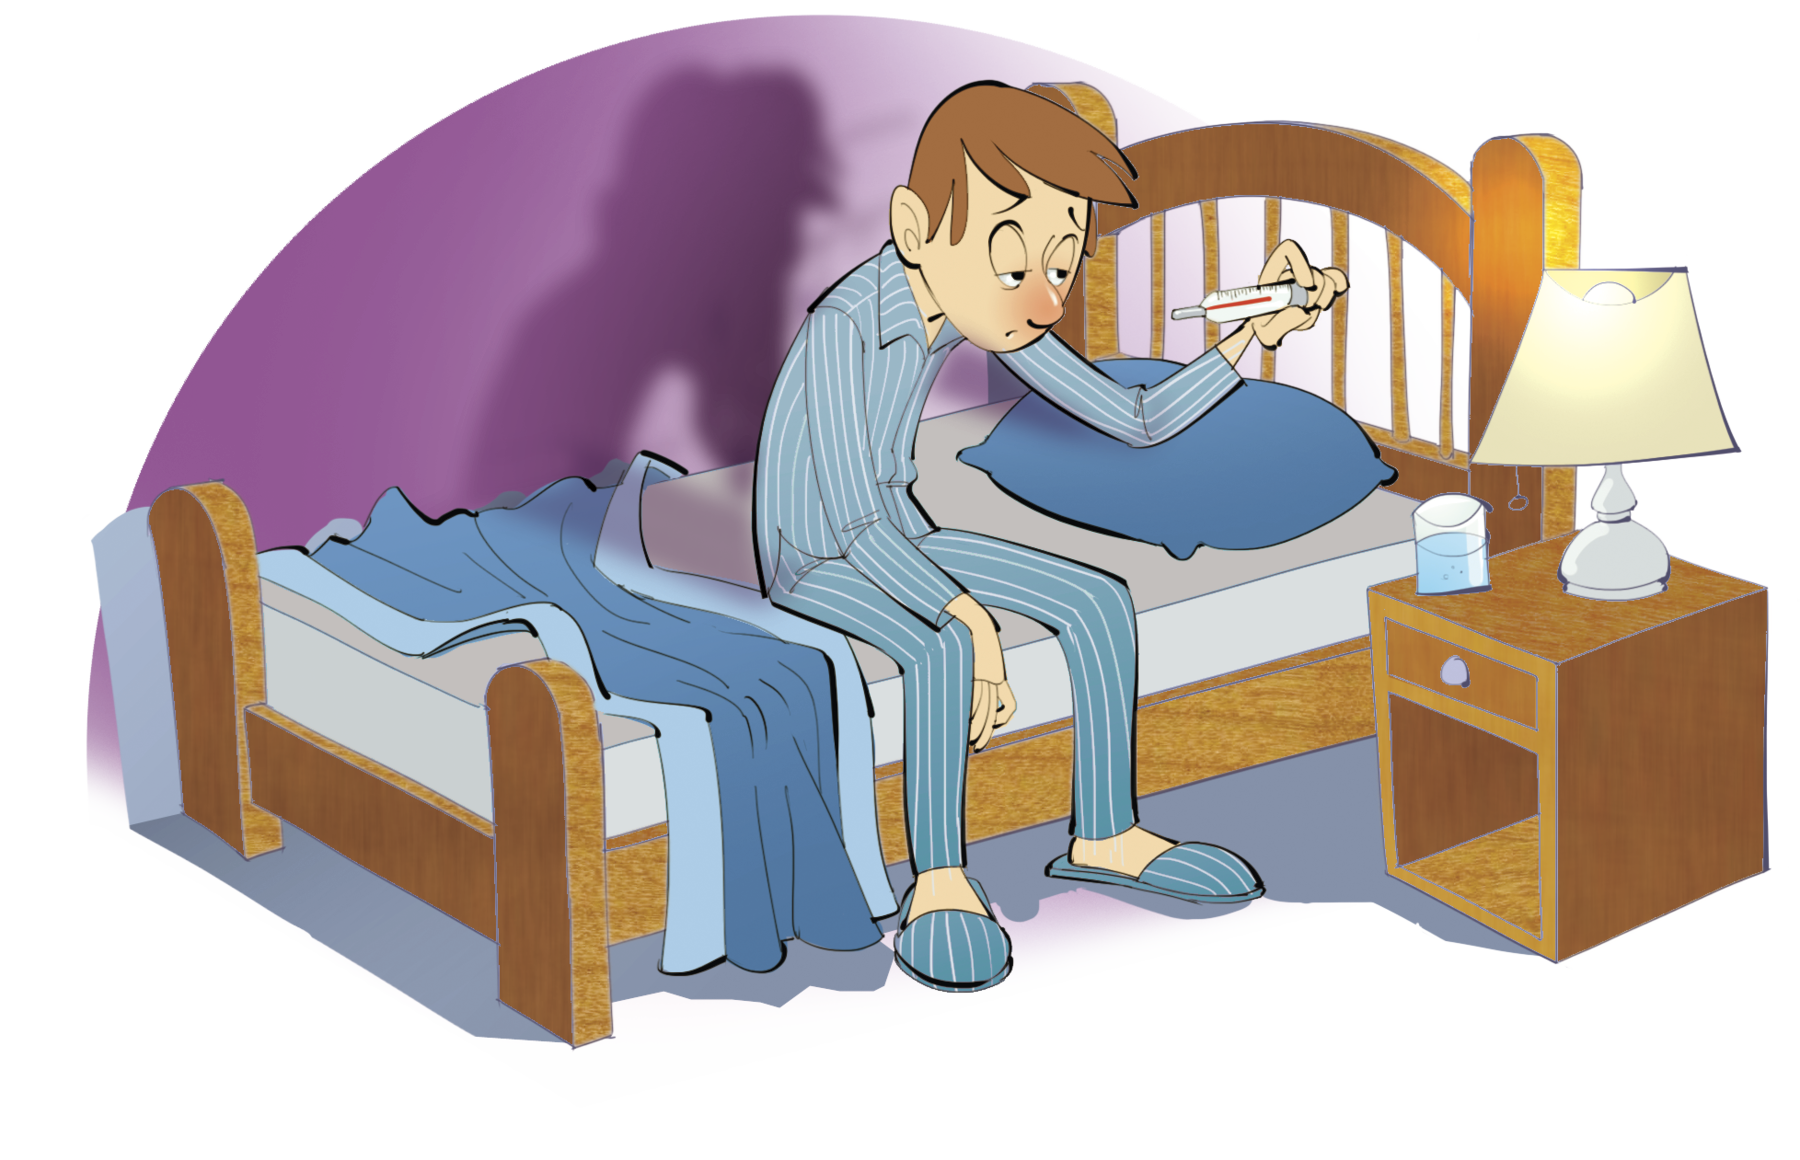 Ilustração. Homem pele branca e cabelos castanhos curto, veste um pijama listrado e está sentado na beirada da cama olhando um termômetro, seu nariz está muito vermelho. À direita, criado-mudo com abajur.